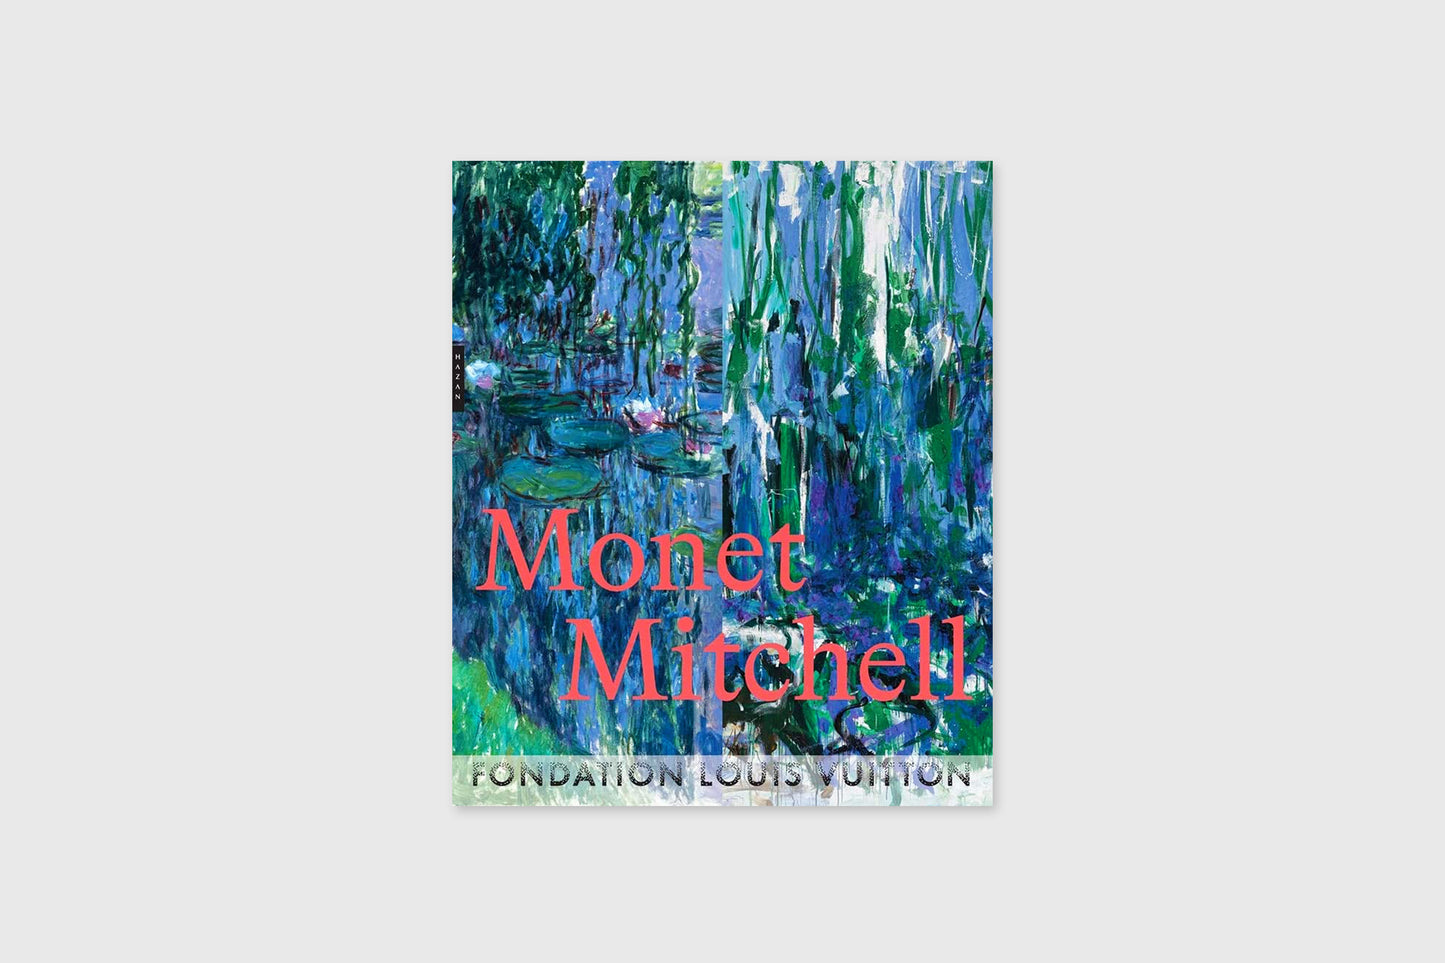 Monet Mitchell